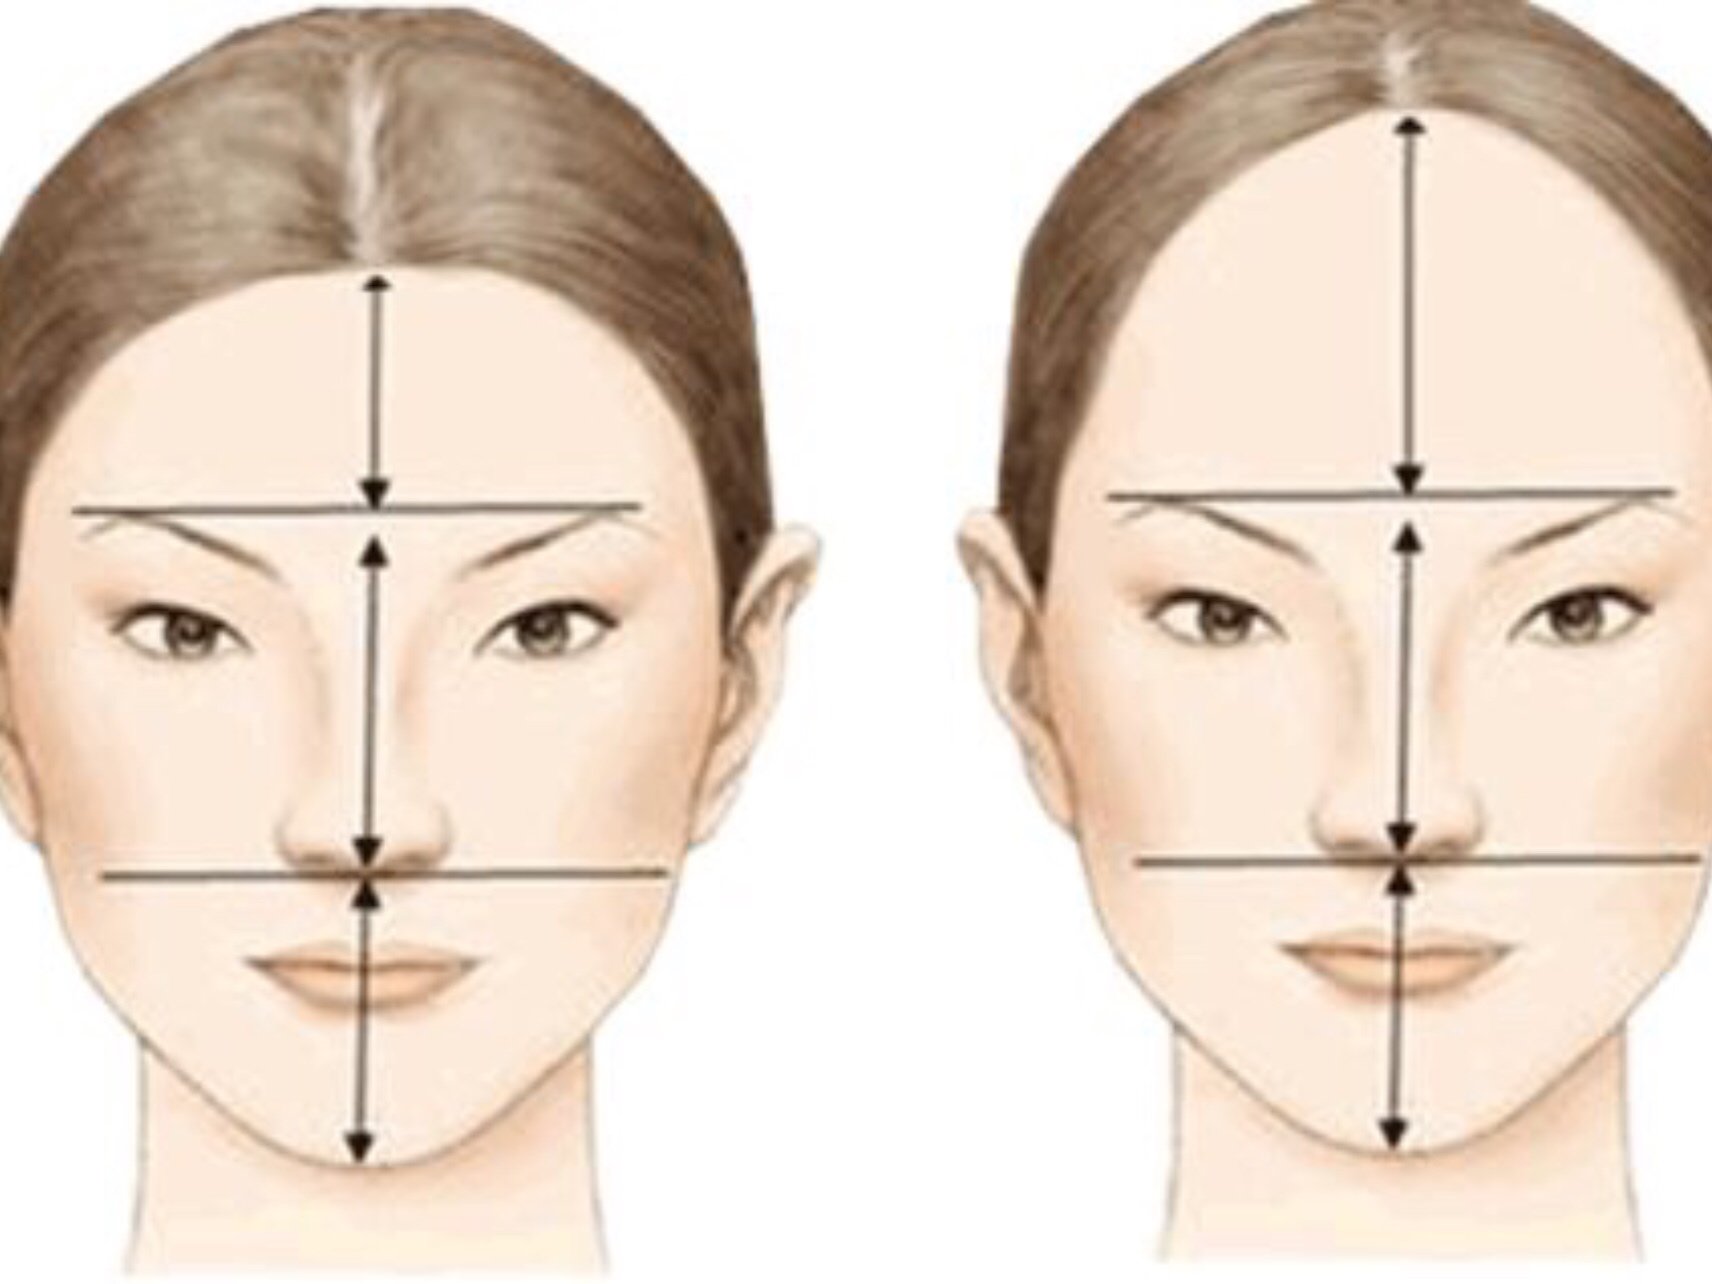 发际线对于面部来说有至关重要的影响我们所说的面部美